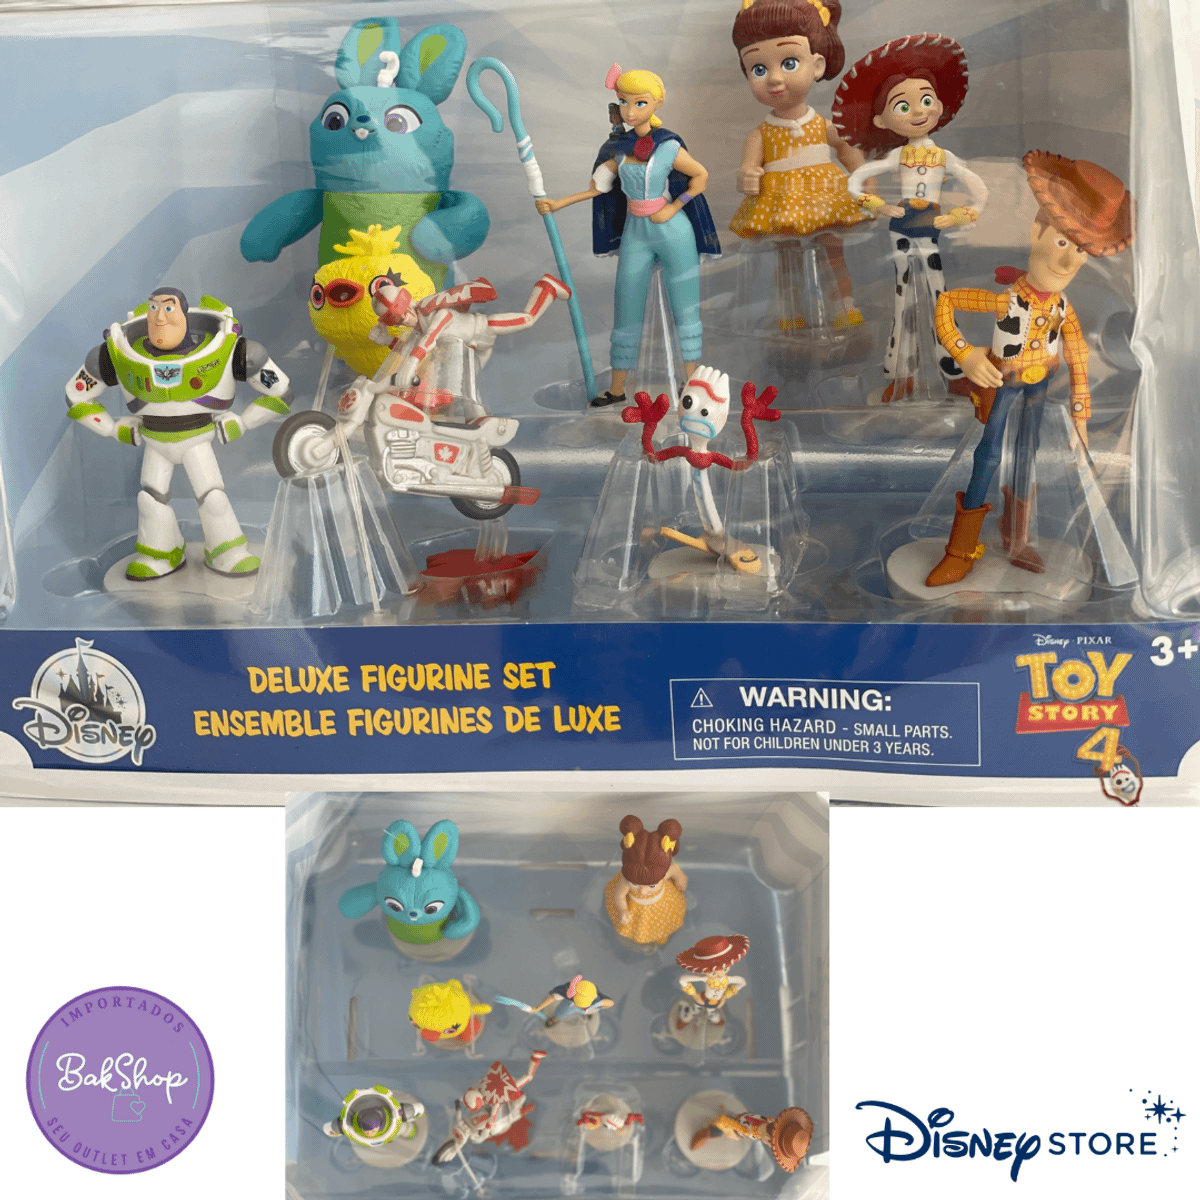 Pelucias Toy Story 4 Disney Dtc Kit Com 5 Personagens em Promoção na  Americanas